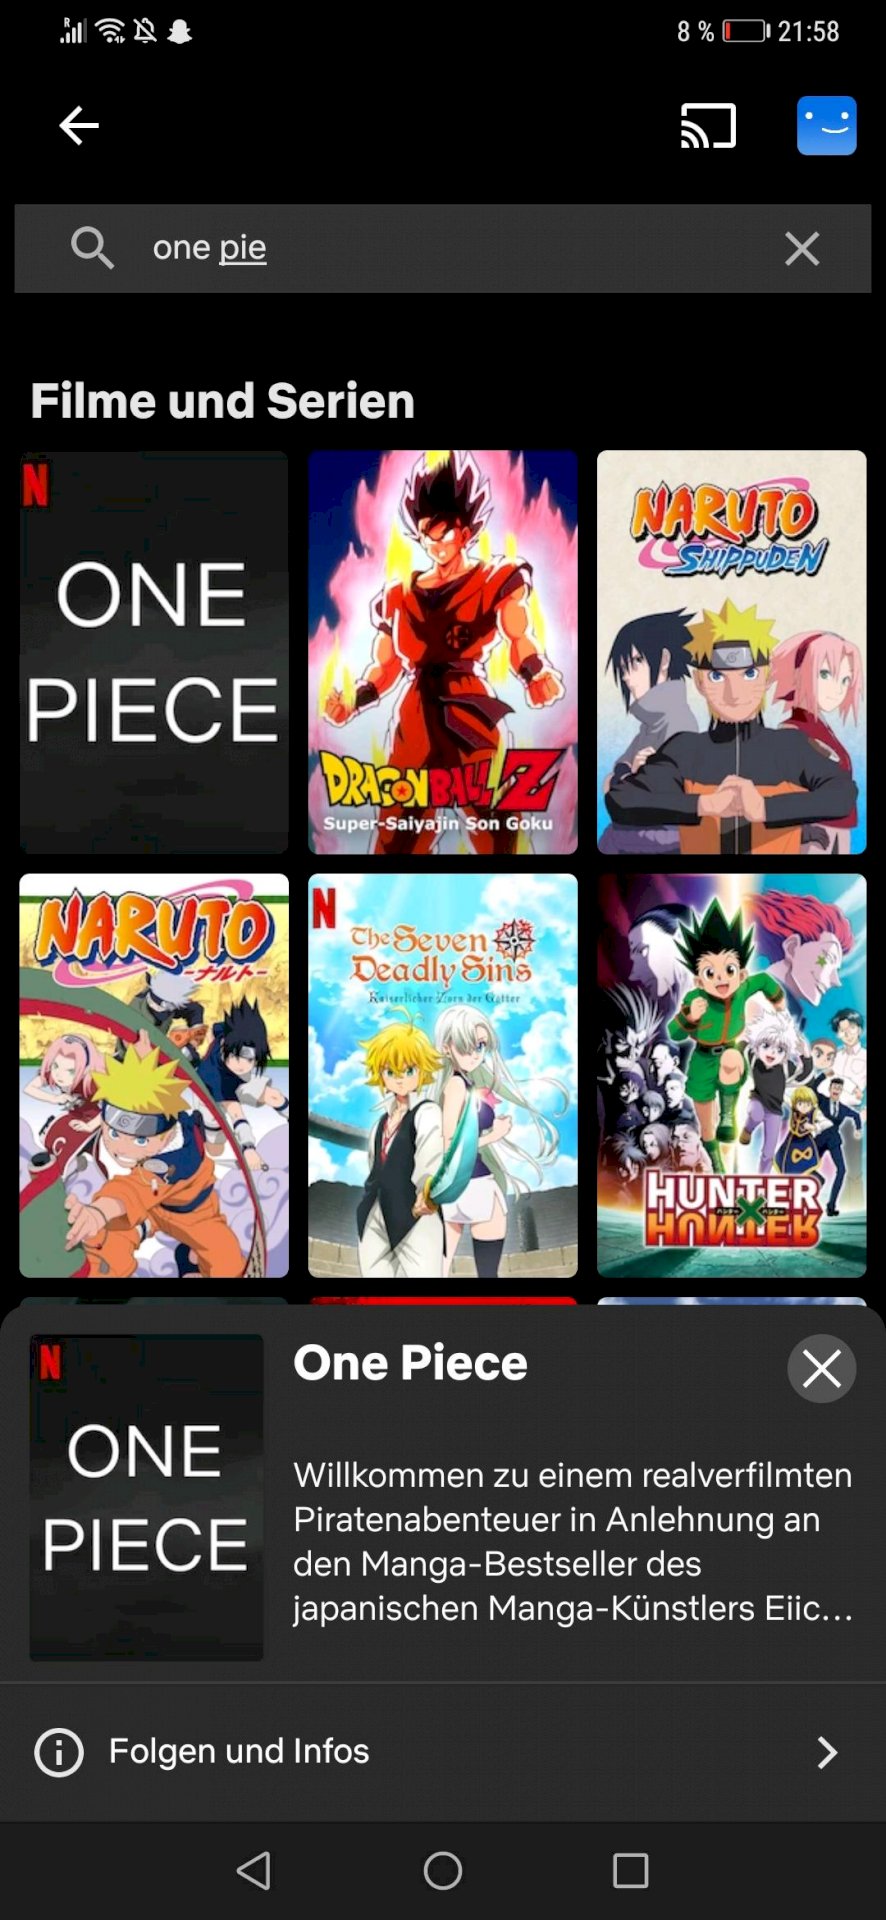 One Piece on Netflix DE soon